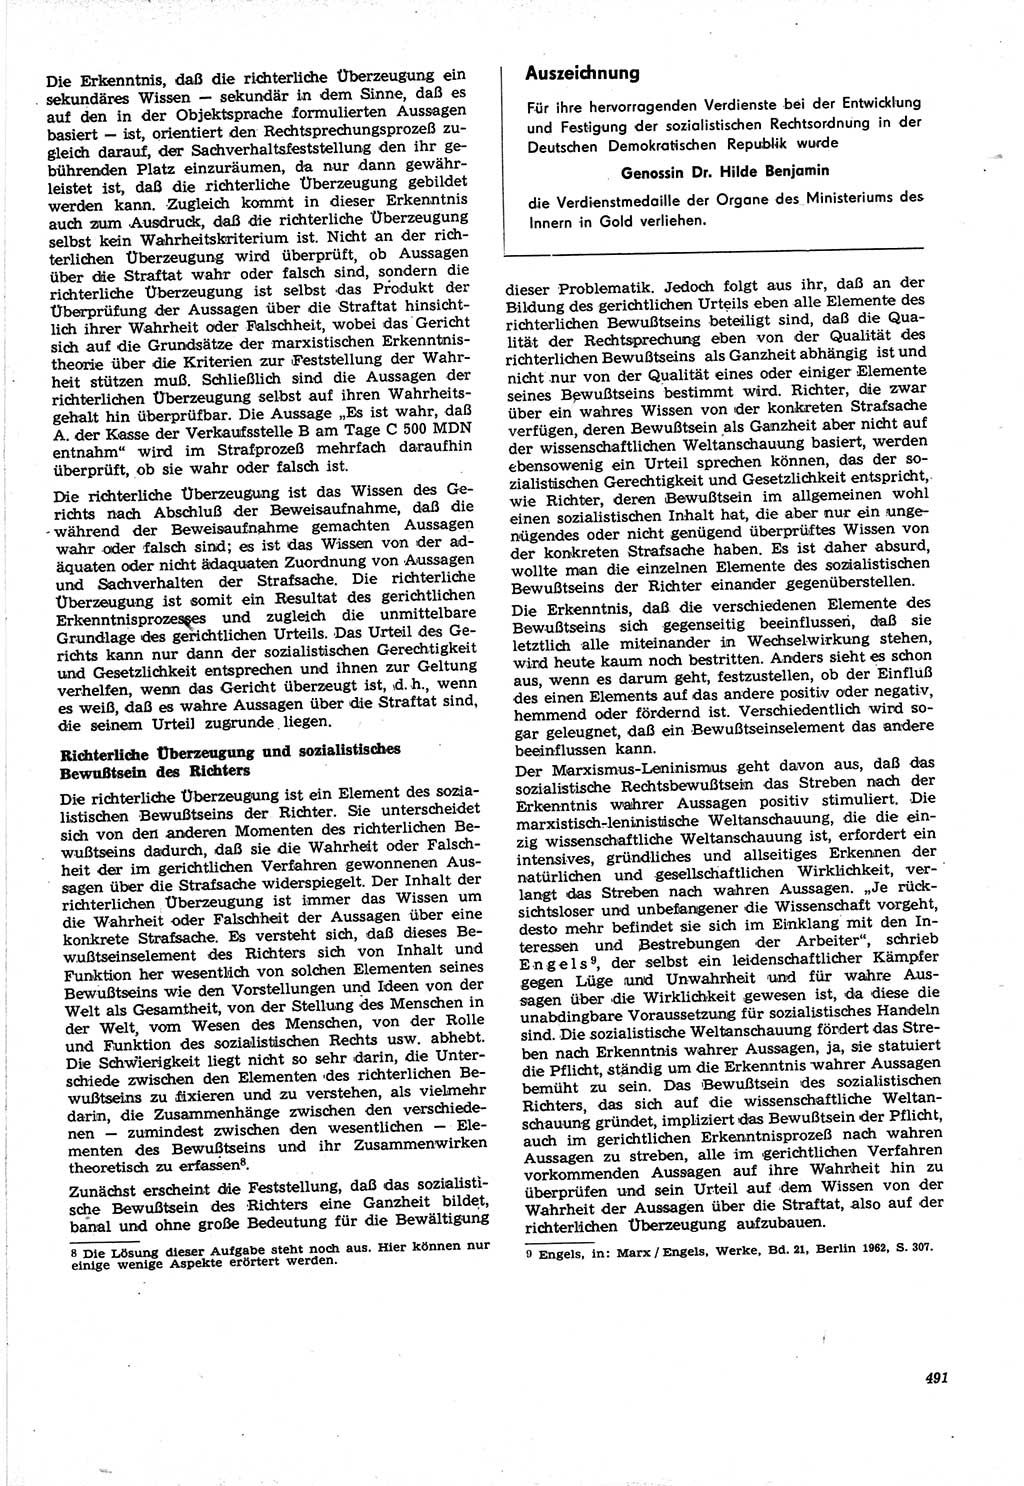 Neue Justiz (NJ), Zeitschrift für Recht und Rechtswissenschaft [Deutsche Demokratische Republik (DDR)], 21. Jahrgang 1967, Seite 491 (NJ DDR 1967, S. 491)